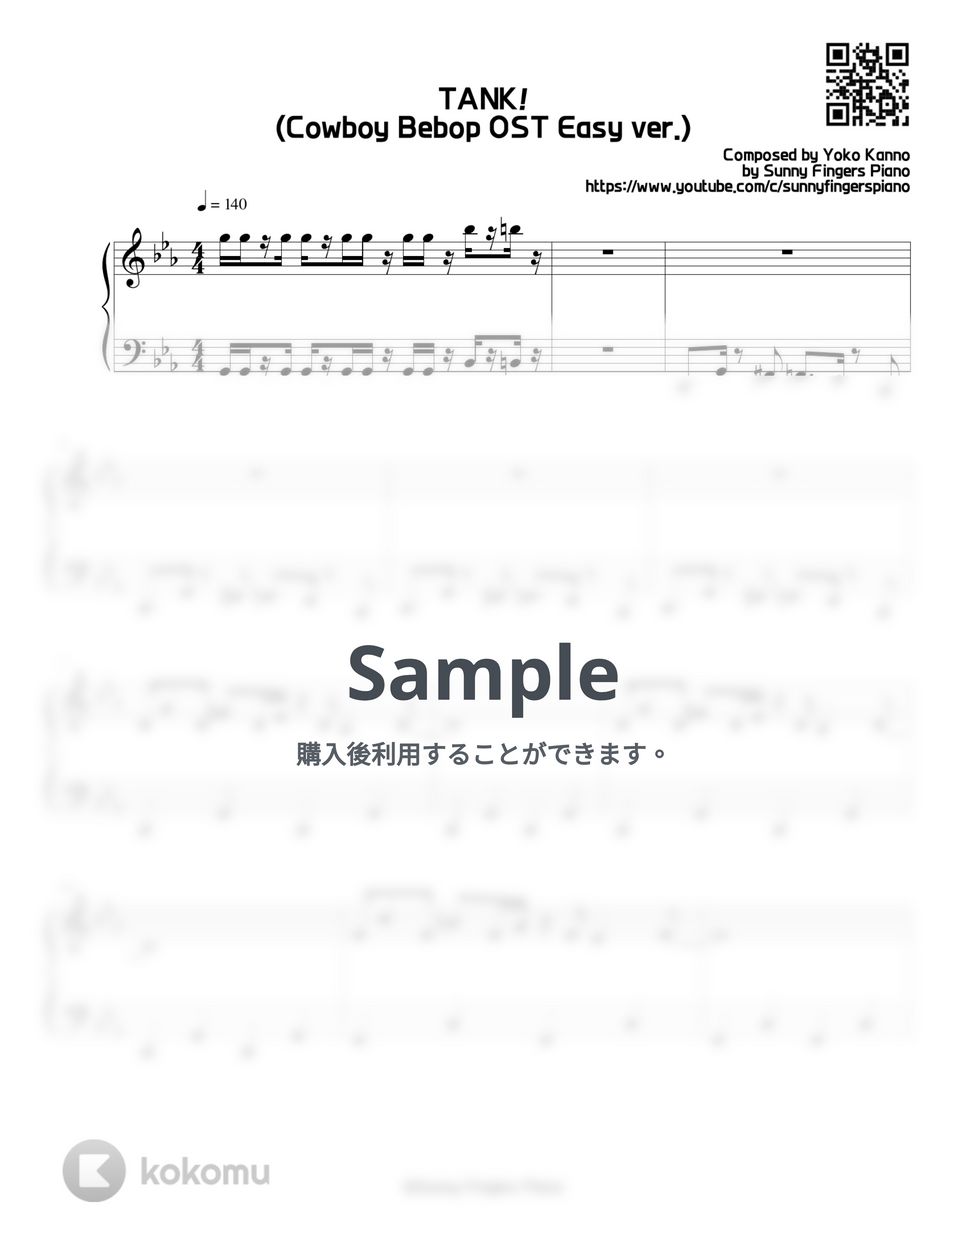 カウボーイ・ビバップ OST - TANK! (Easy) by Sunny Fingers Piano